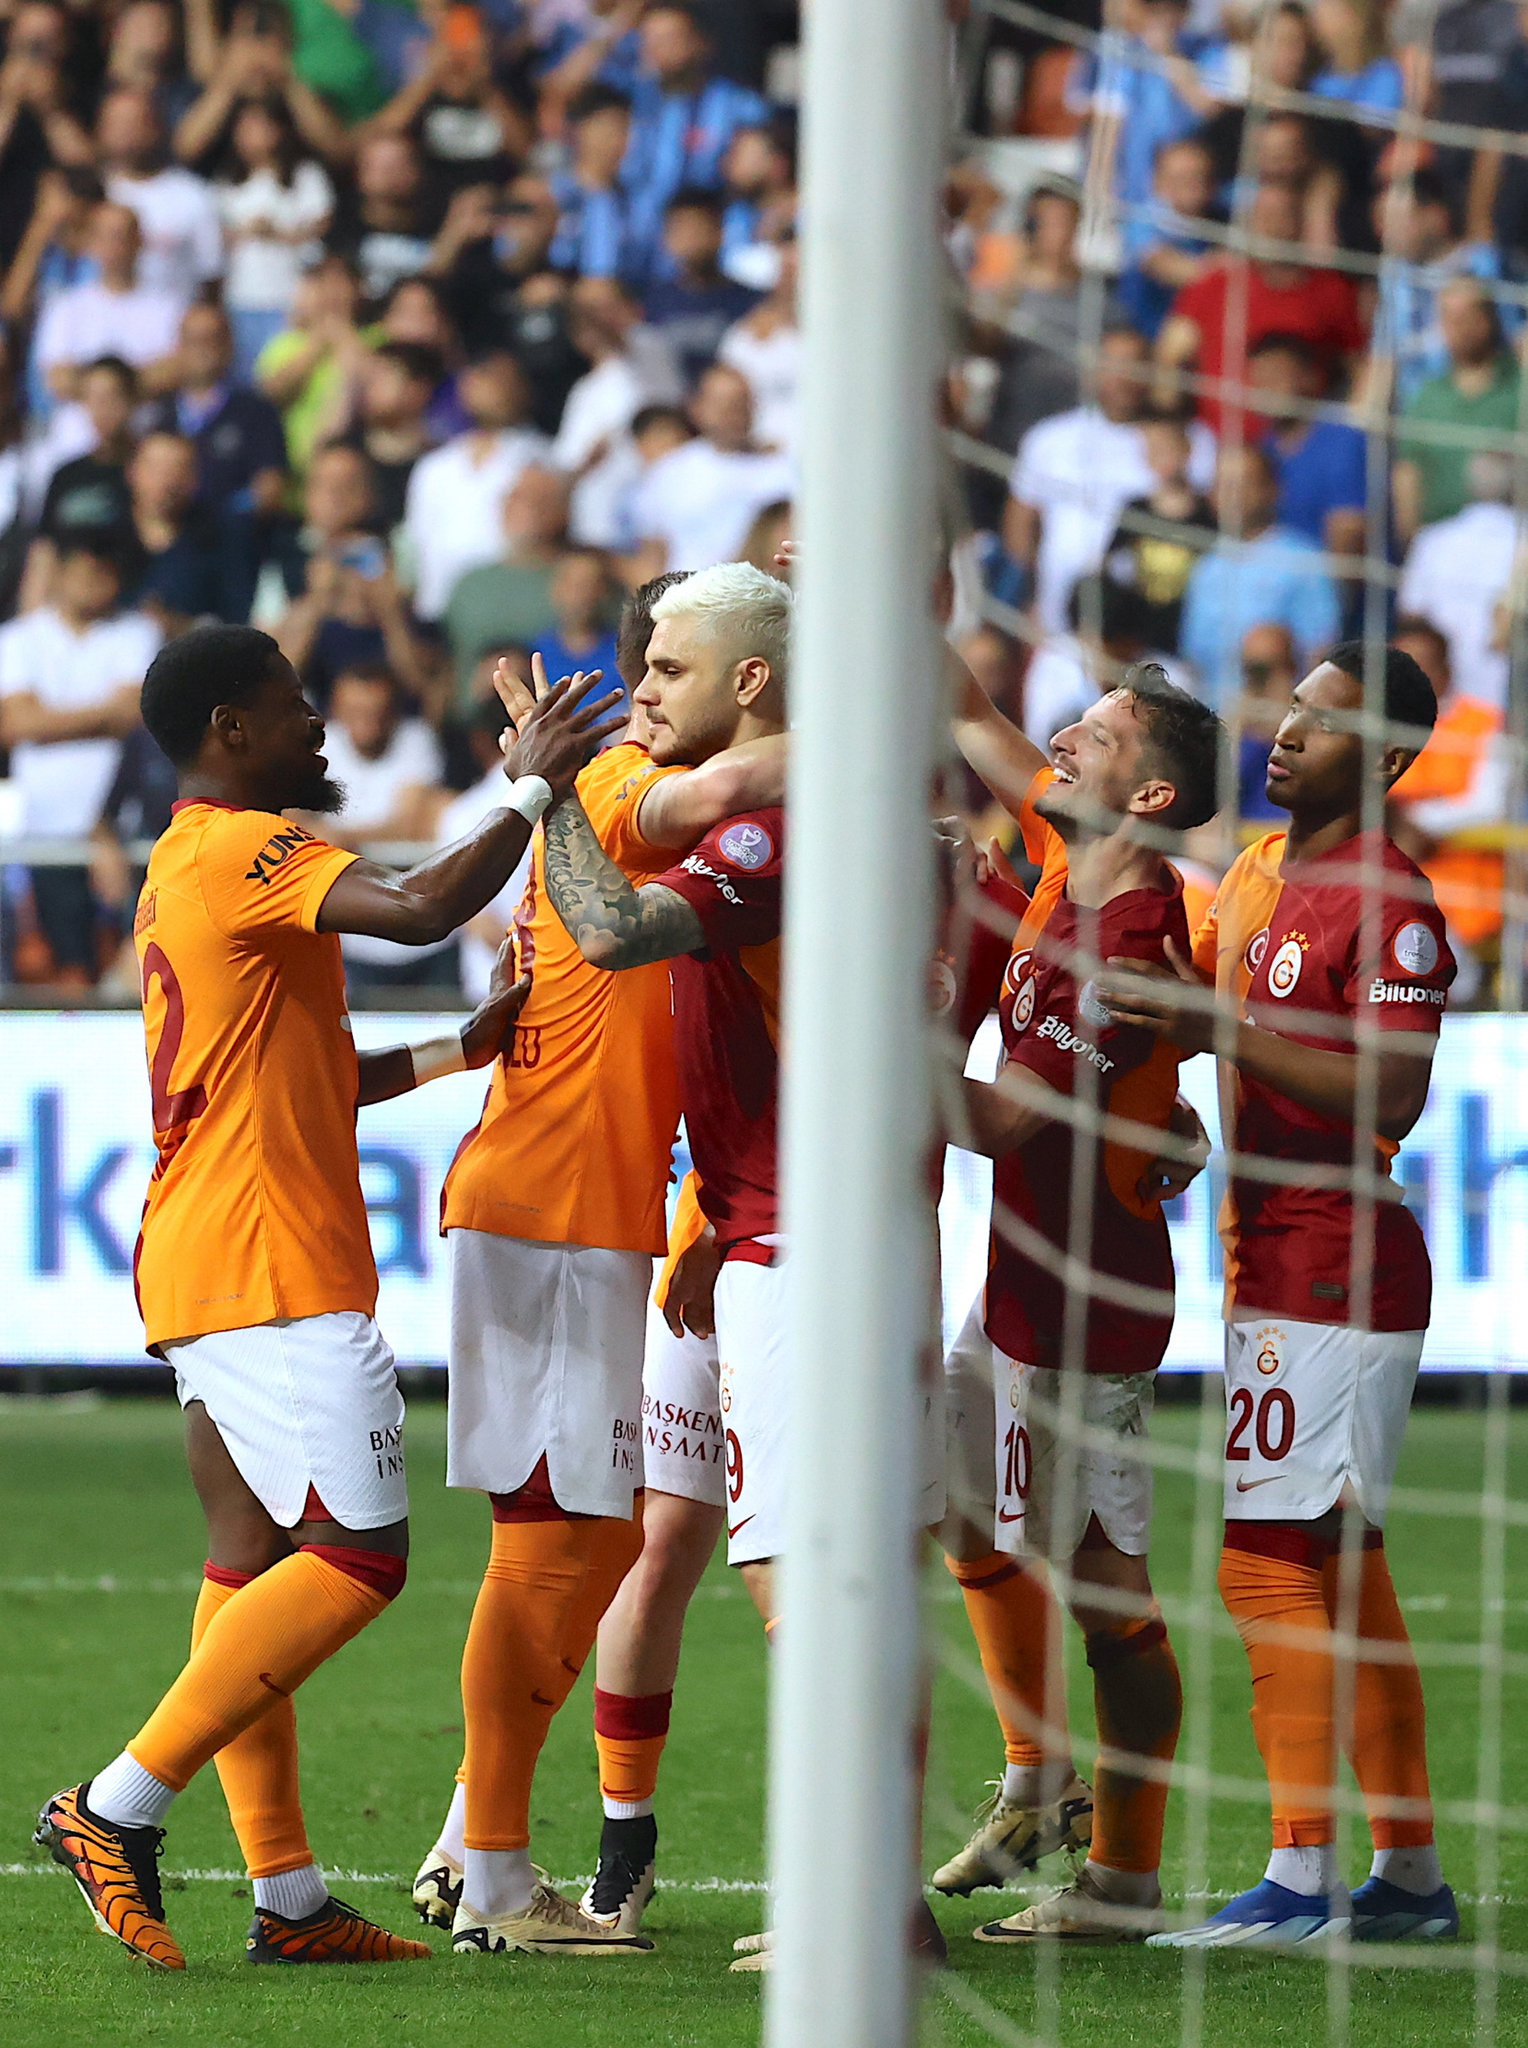 TRANSFER HABERİ | Tarihe geçecek imza! Galatasaray transfer rekorunu kırıyor